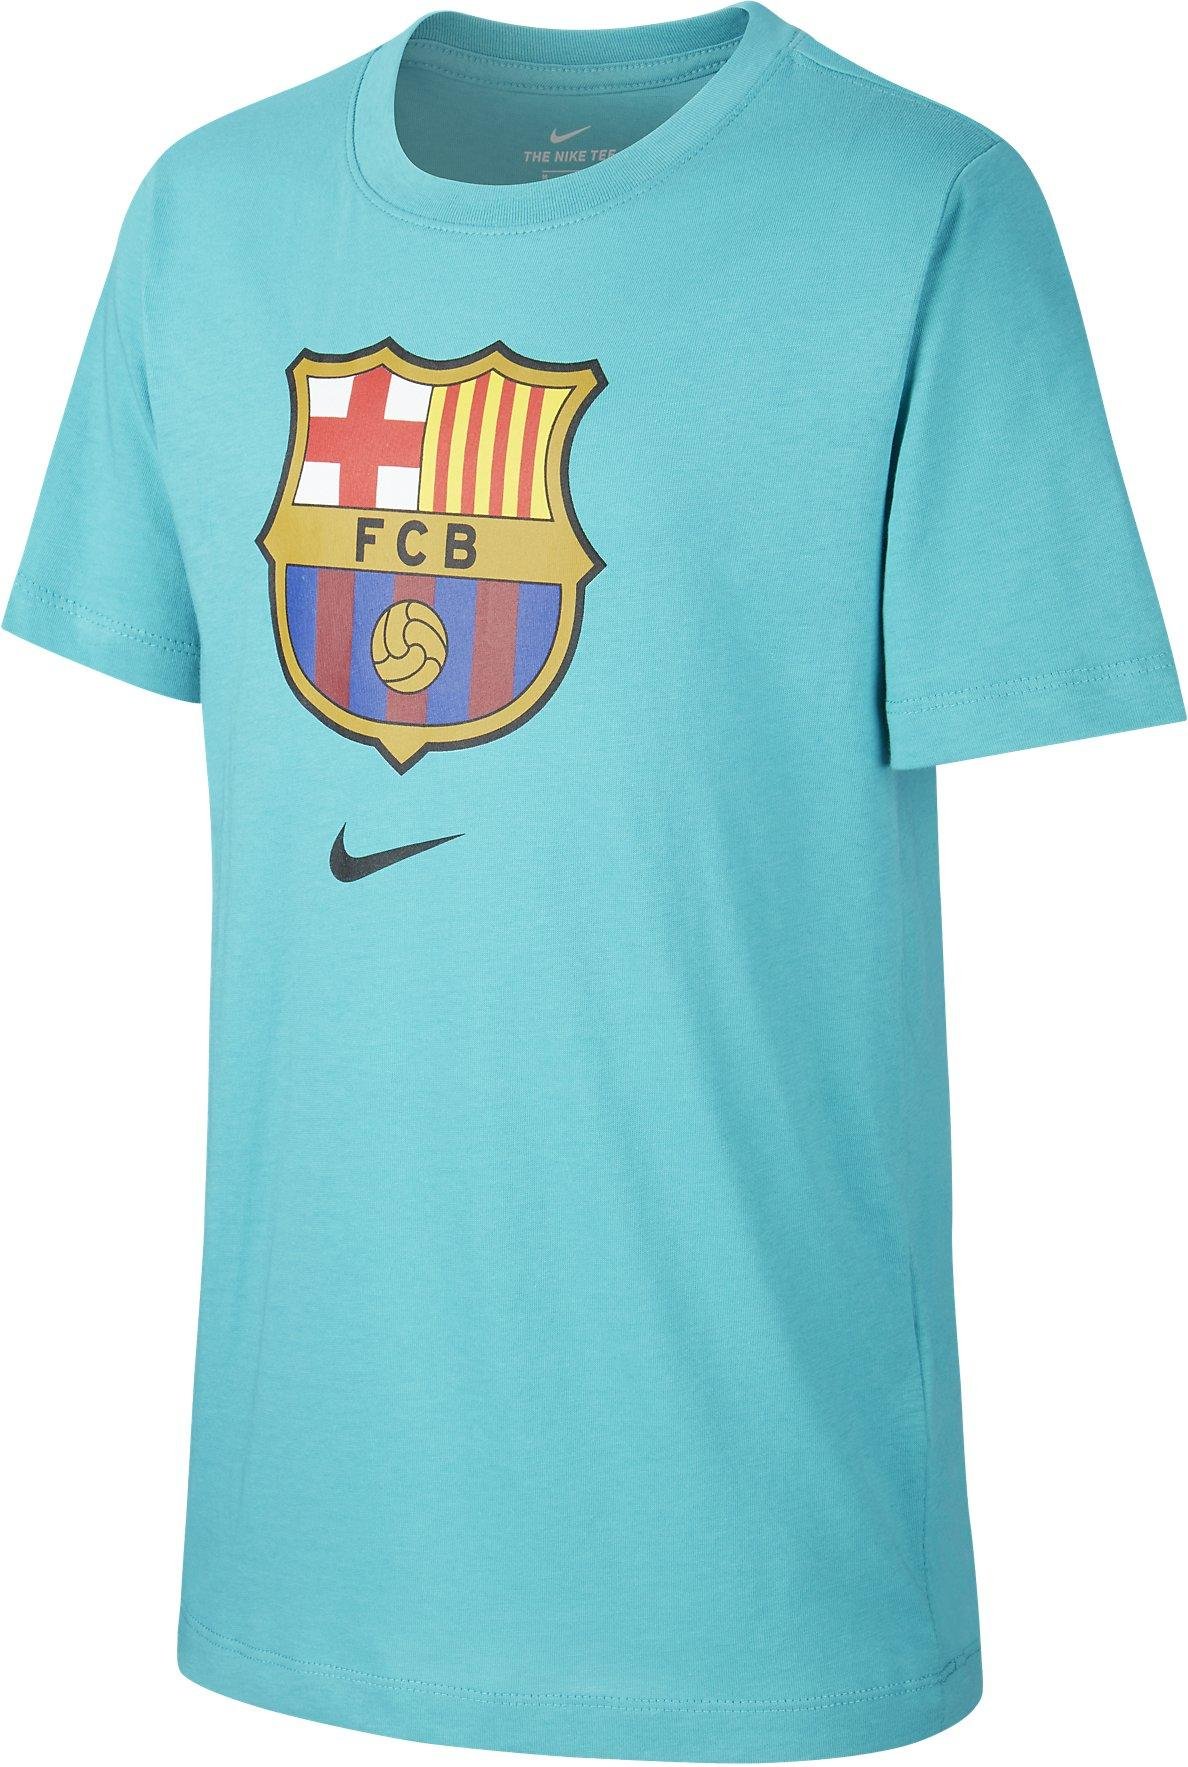 Camiseta Nike FCB B NK TEE EVERGREEN CRST 2